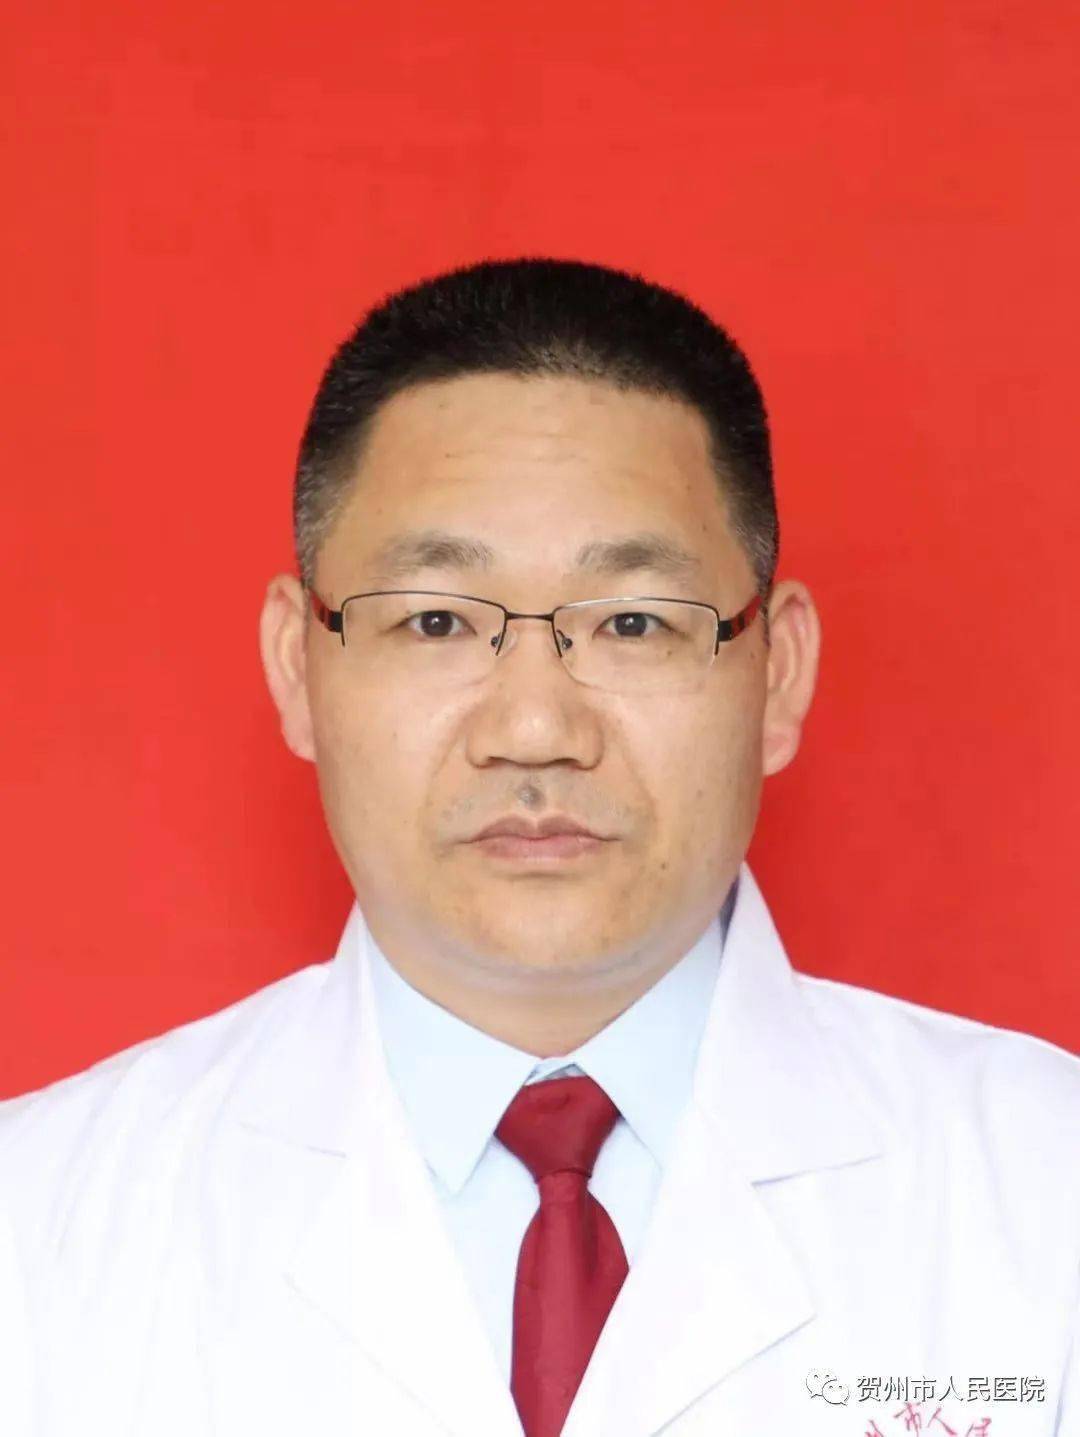 冯良恩脊柱骨病关节外科,副主任医师2002年毕业于桂林医学院临床医疗